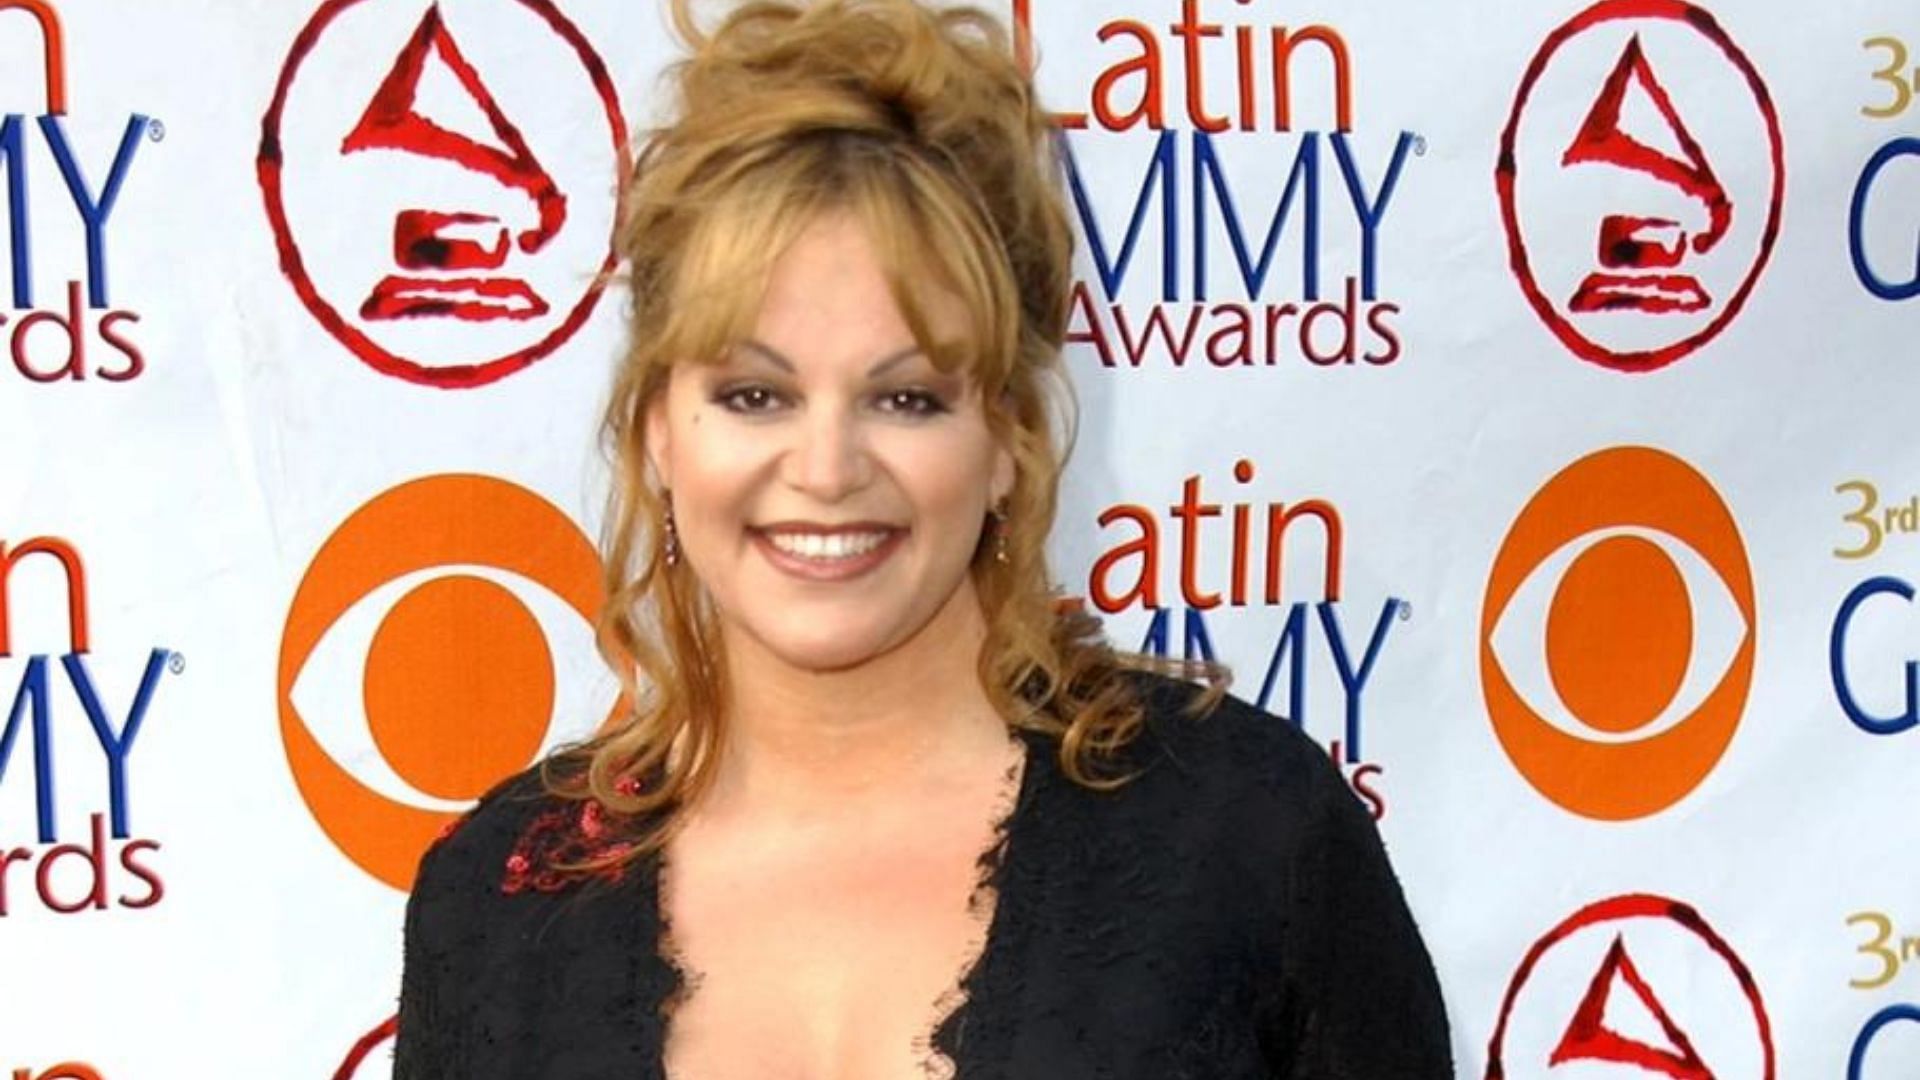 A still of Jenni Rivera (Image via Billboard)